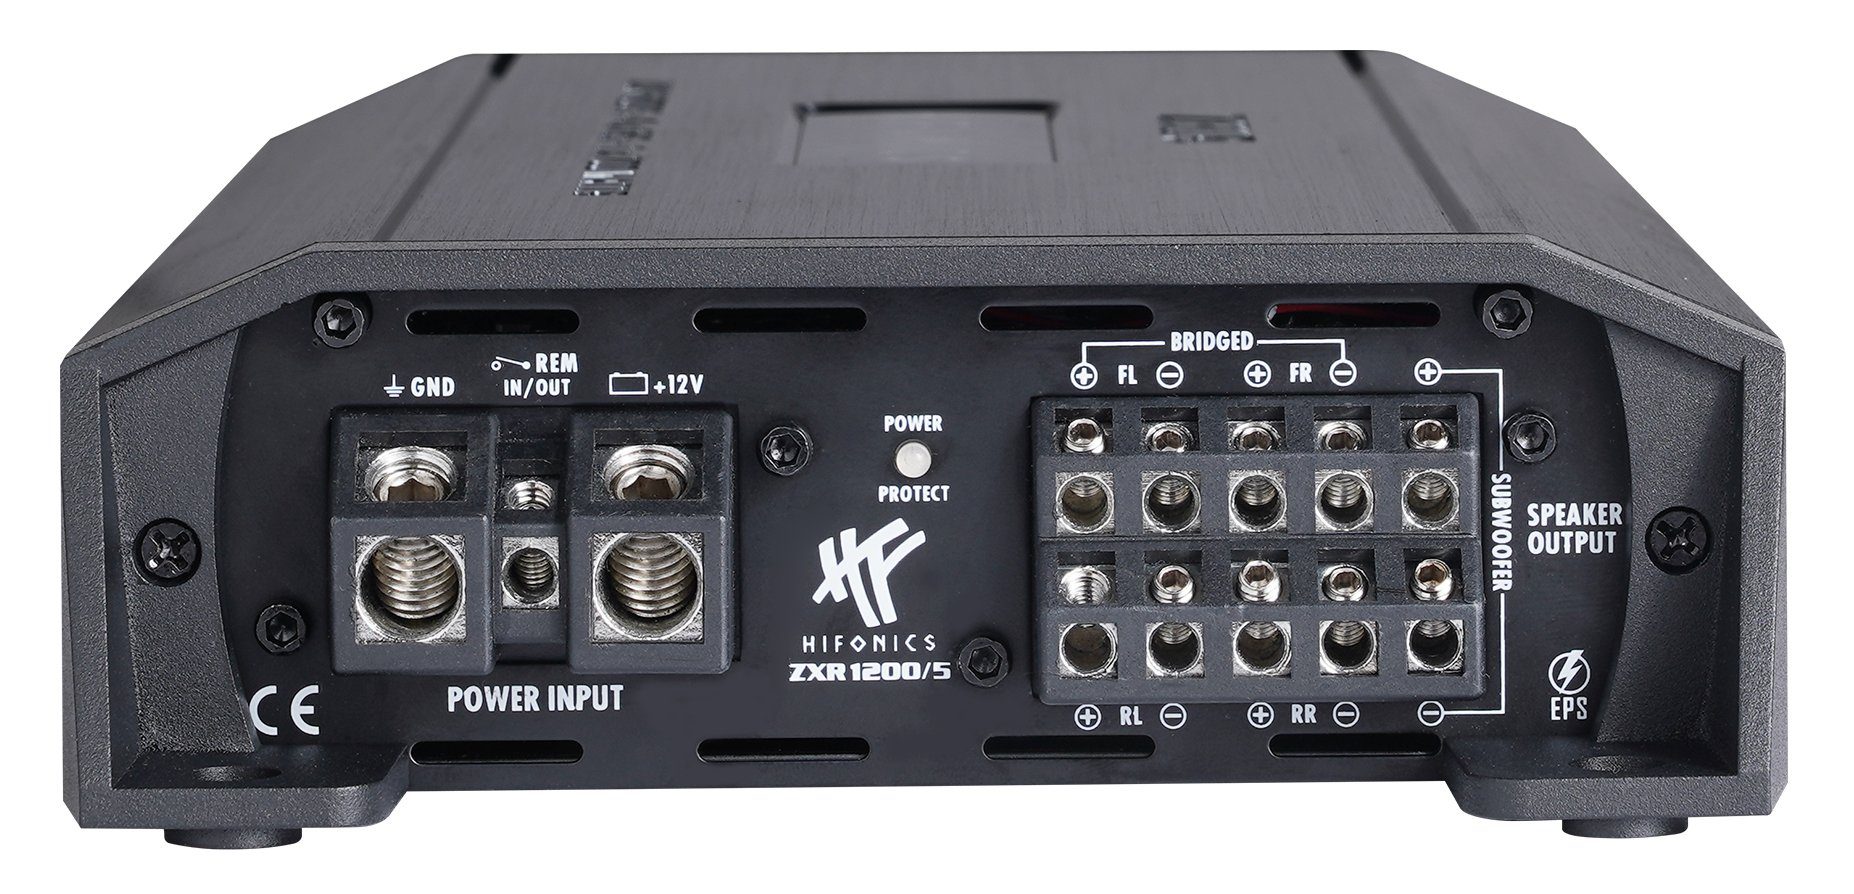 Hifonics ZXR Verstärker 1200 (Anzahl Kanal Kanäle: Endstufe 5 5-Kanal) 5 Class-D Verstärker